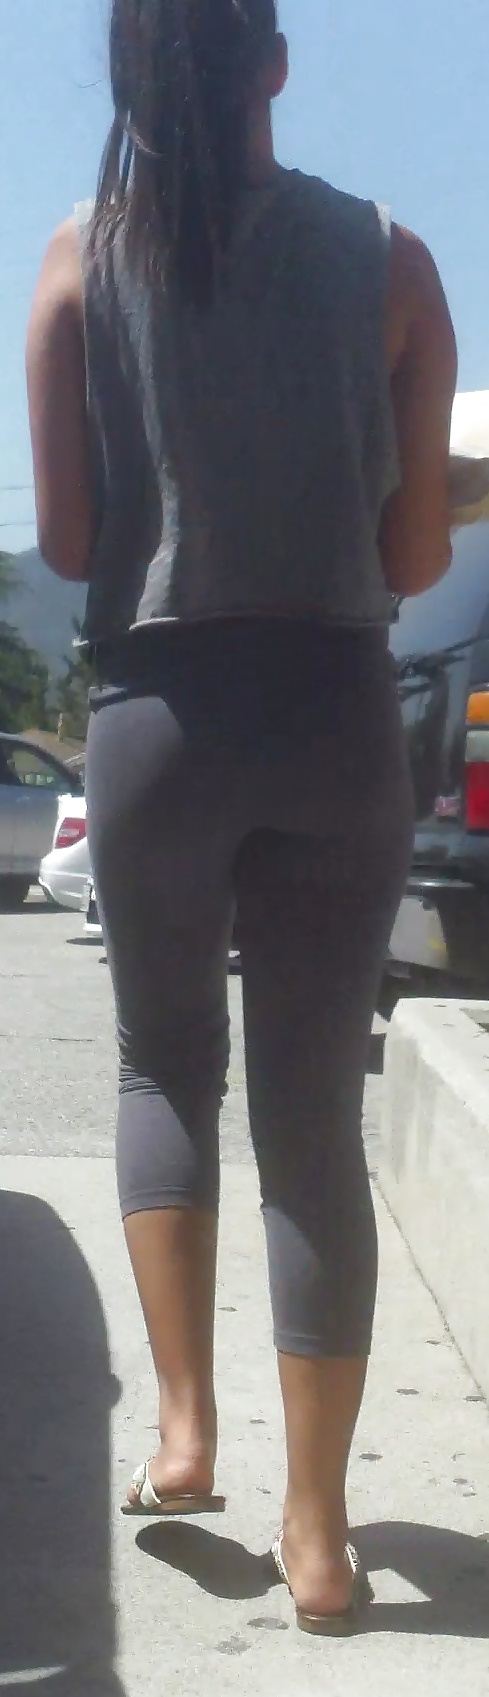 Popular teen girls ass & butt in jeans part 4  #26740087